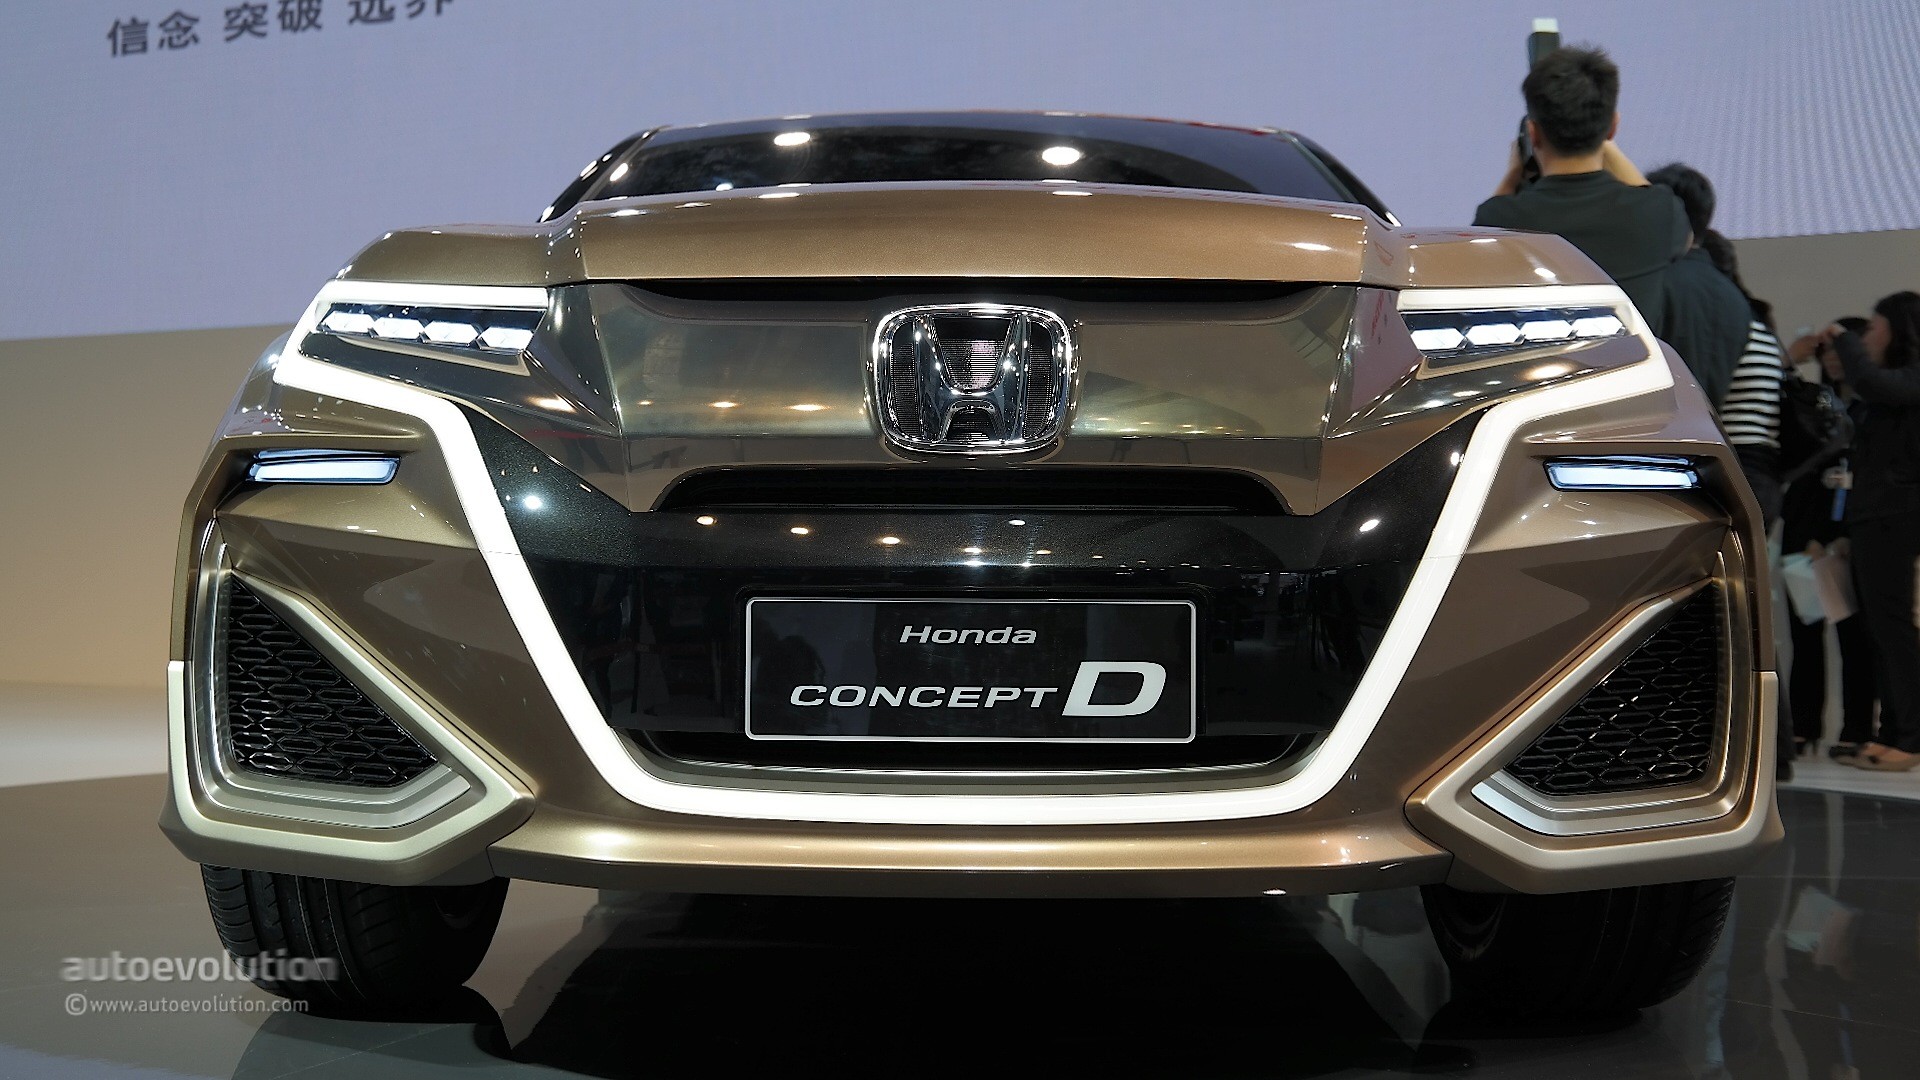 Honda Concept D Wallpapers